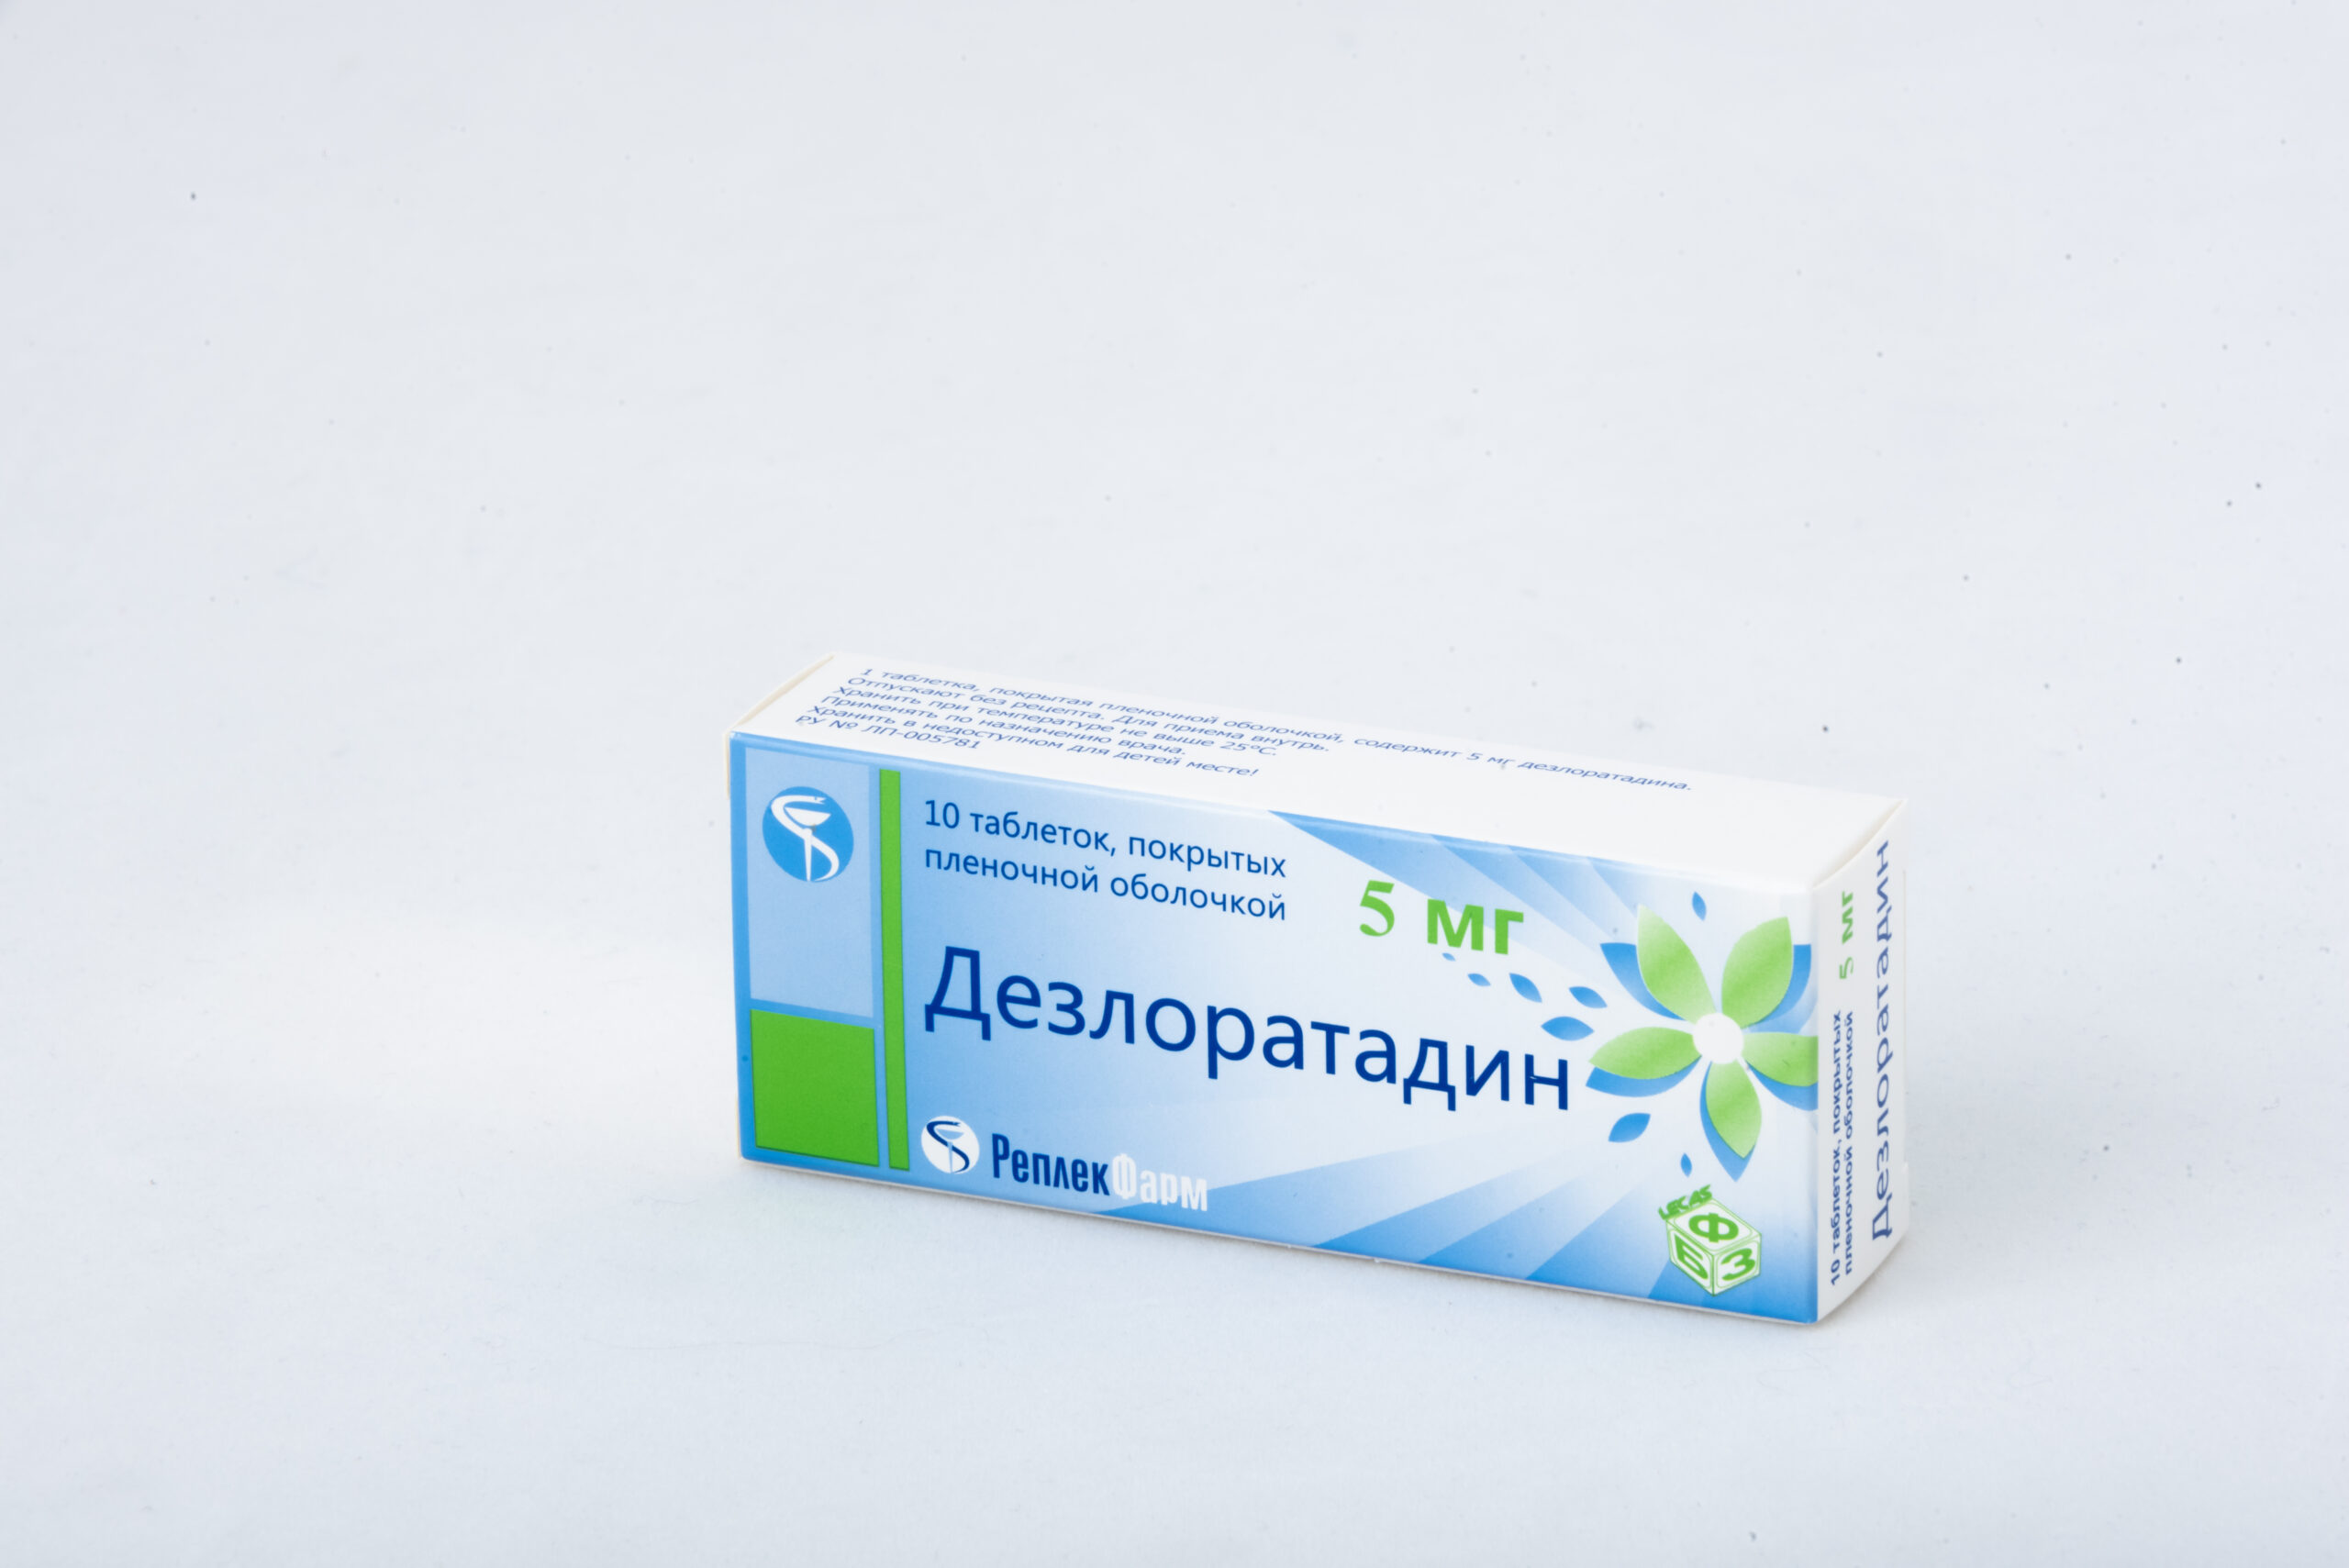 Дезлоратадин — LEKAS фармацевтический завод